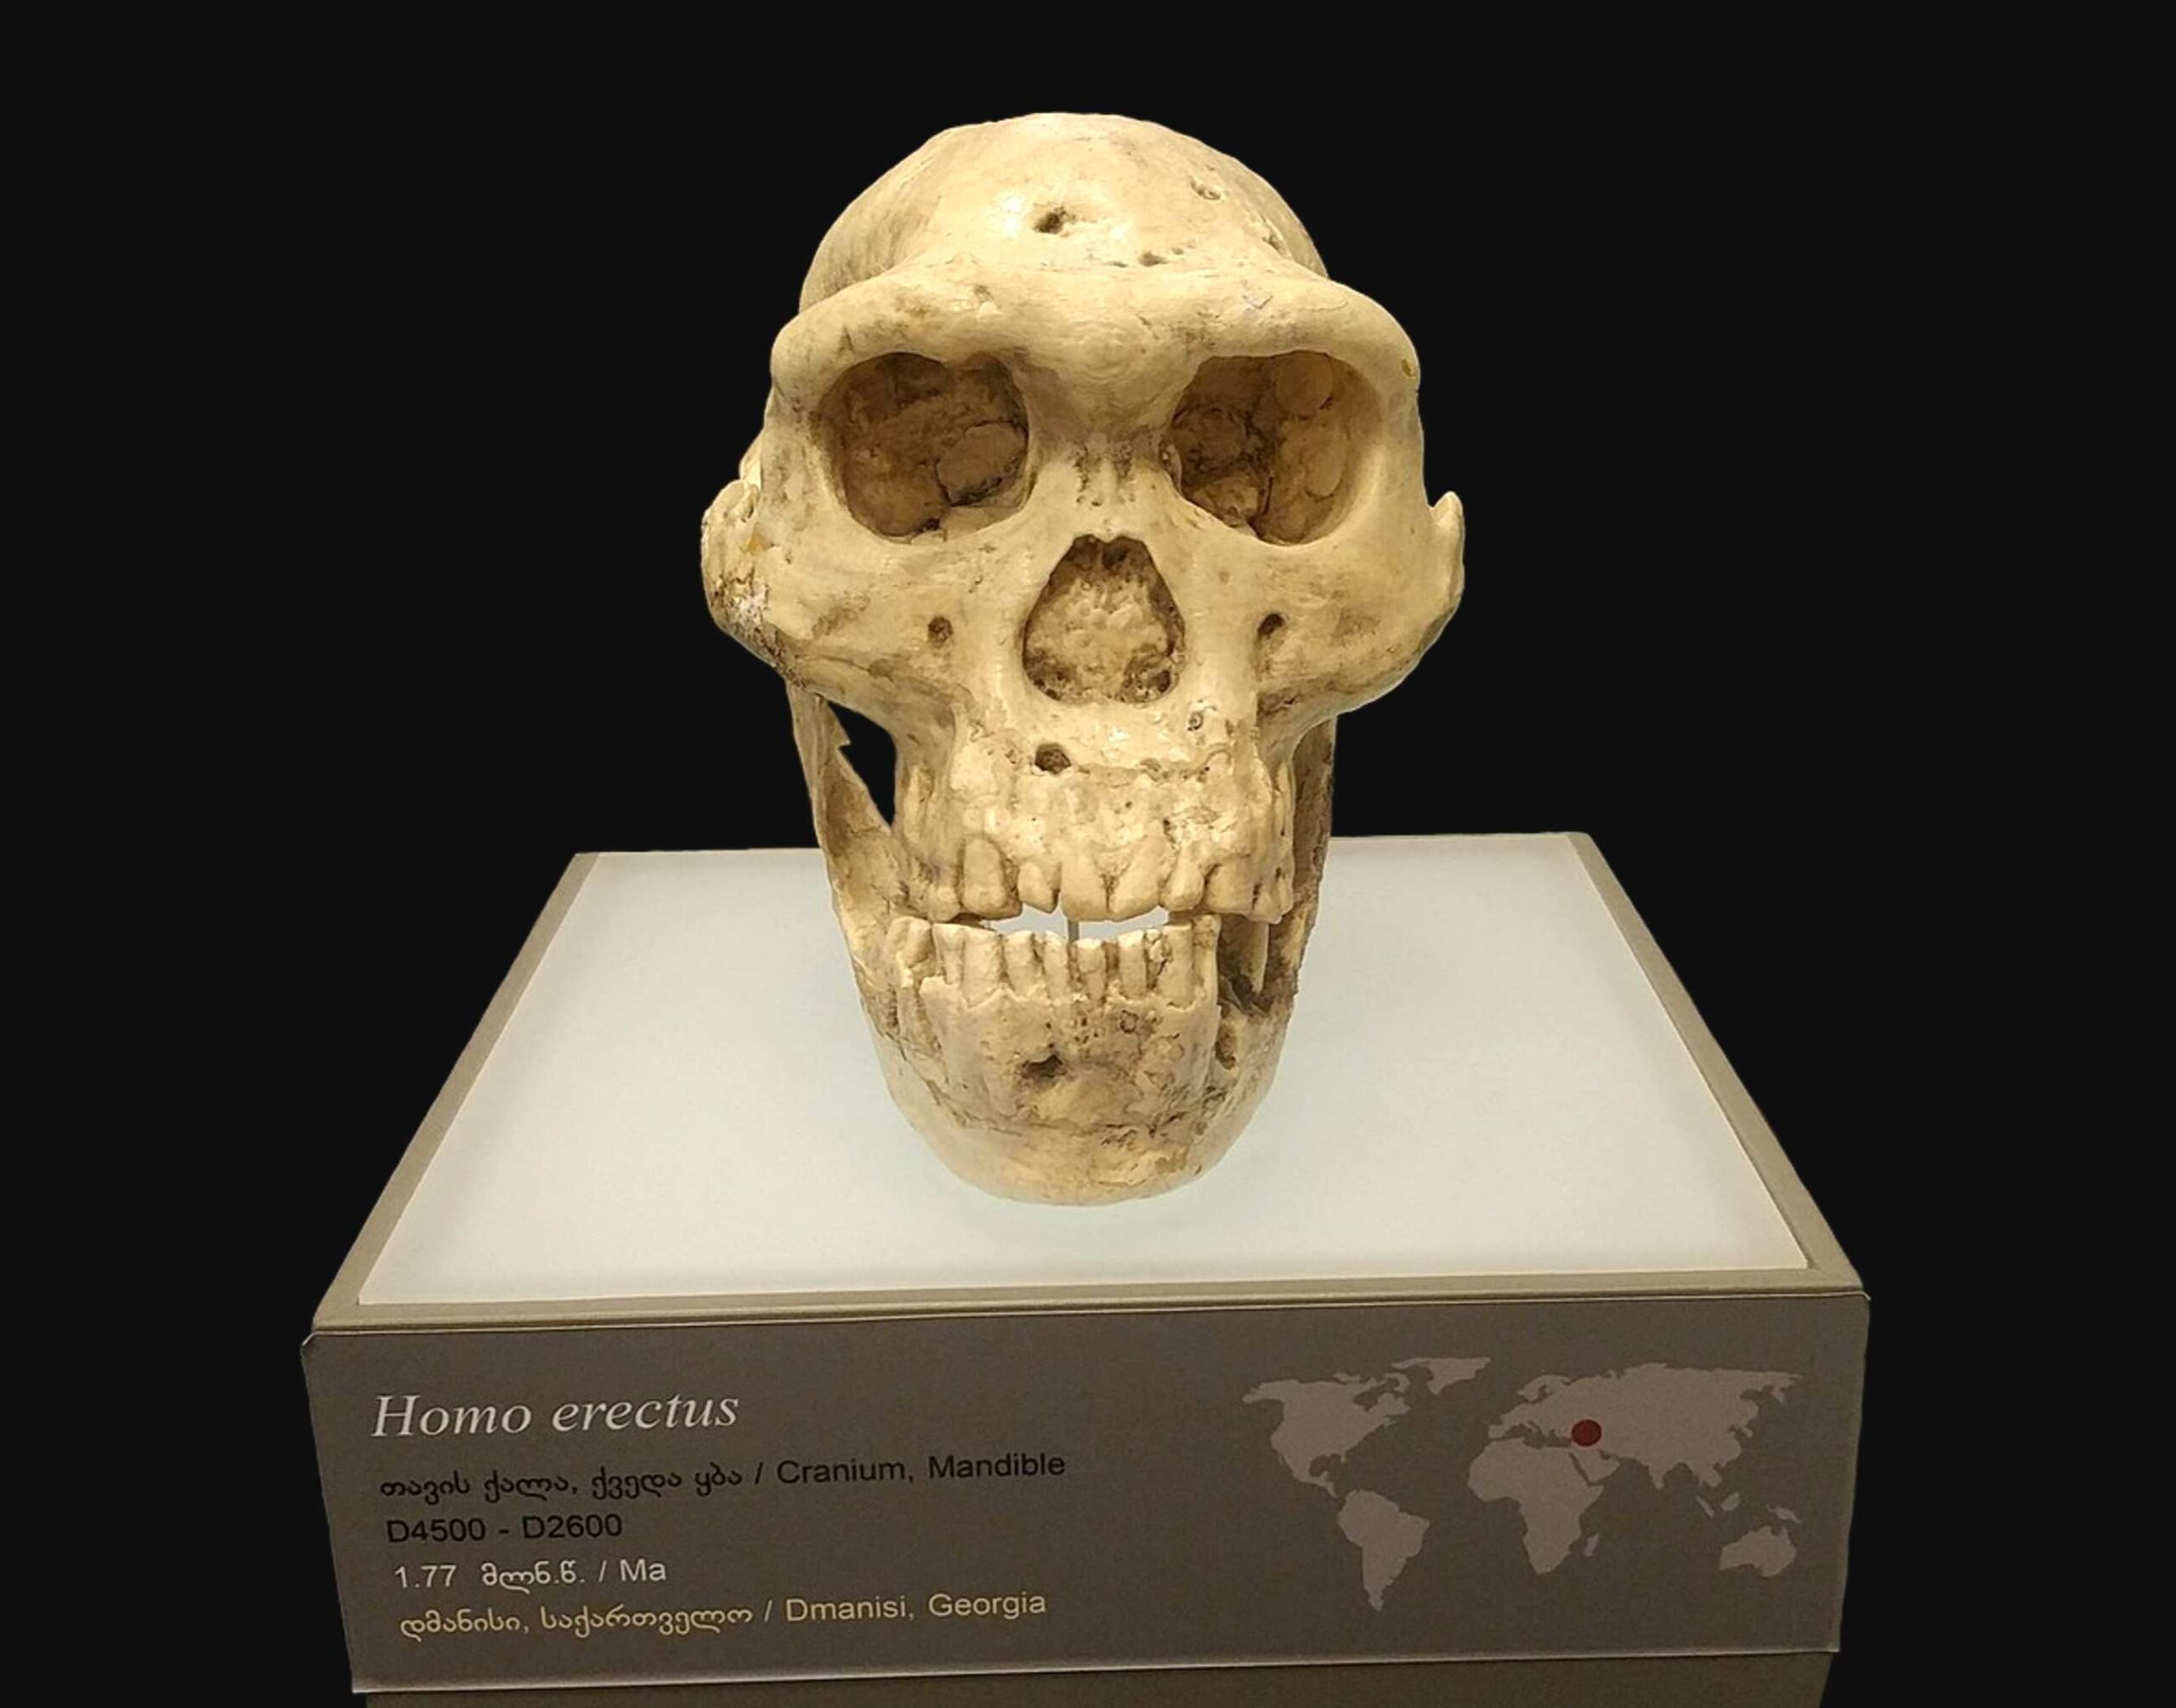 Crâne 5 - Un crâne humain vieux d'un million d'années a forcé les scientifiques à repenser l'évolution humaine précoce 2